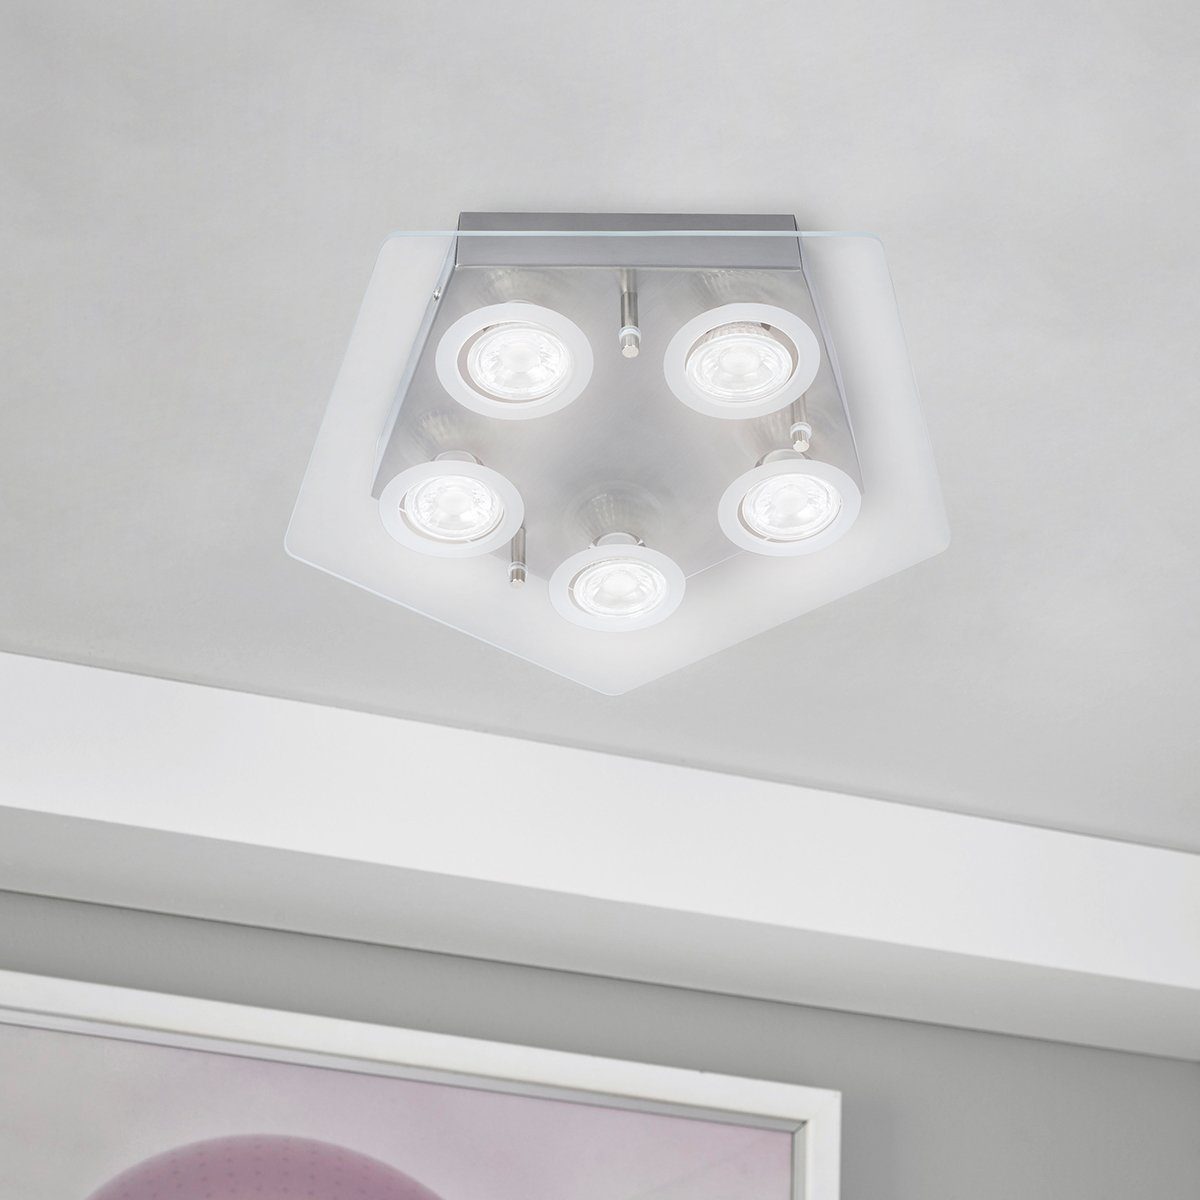 MeLiTec LED Deckenleuchte D88, LED, Deckenlampe, Wand, Leuchte, Deckenstrahler, Spot, Wohnzimmer, Beleuchtung